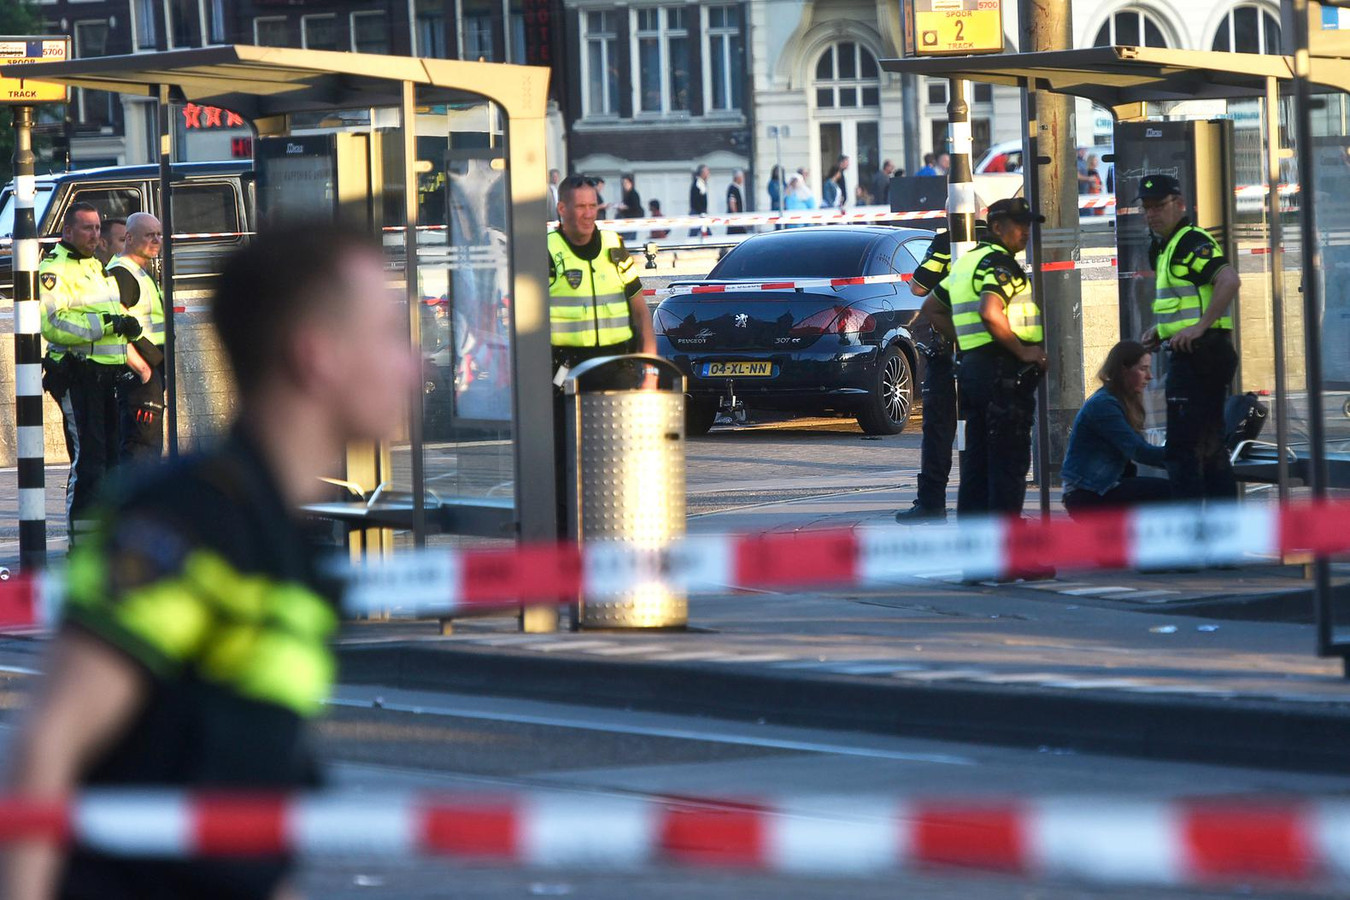 Politie verricht onderzoek voor het centraal station van Amsterdam waar zich een incident met een auto heeft voorgedaan.